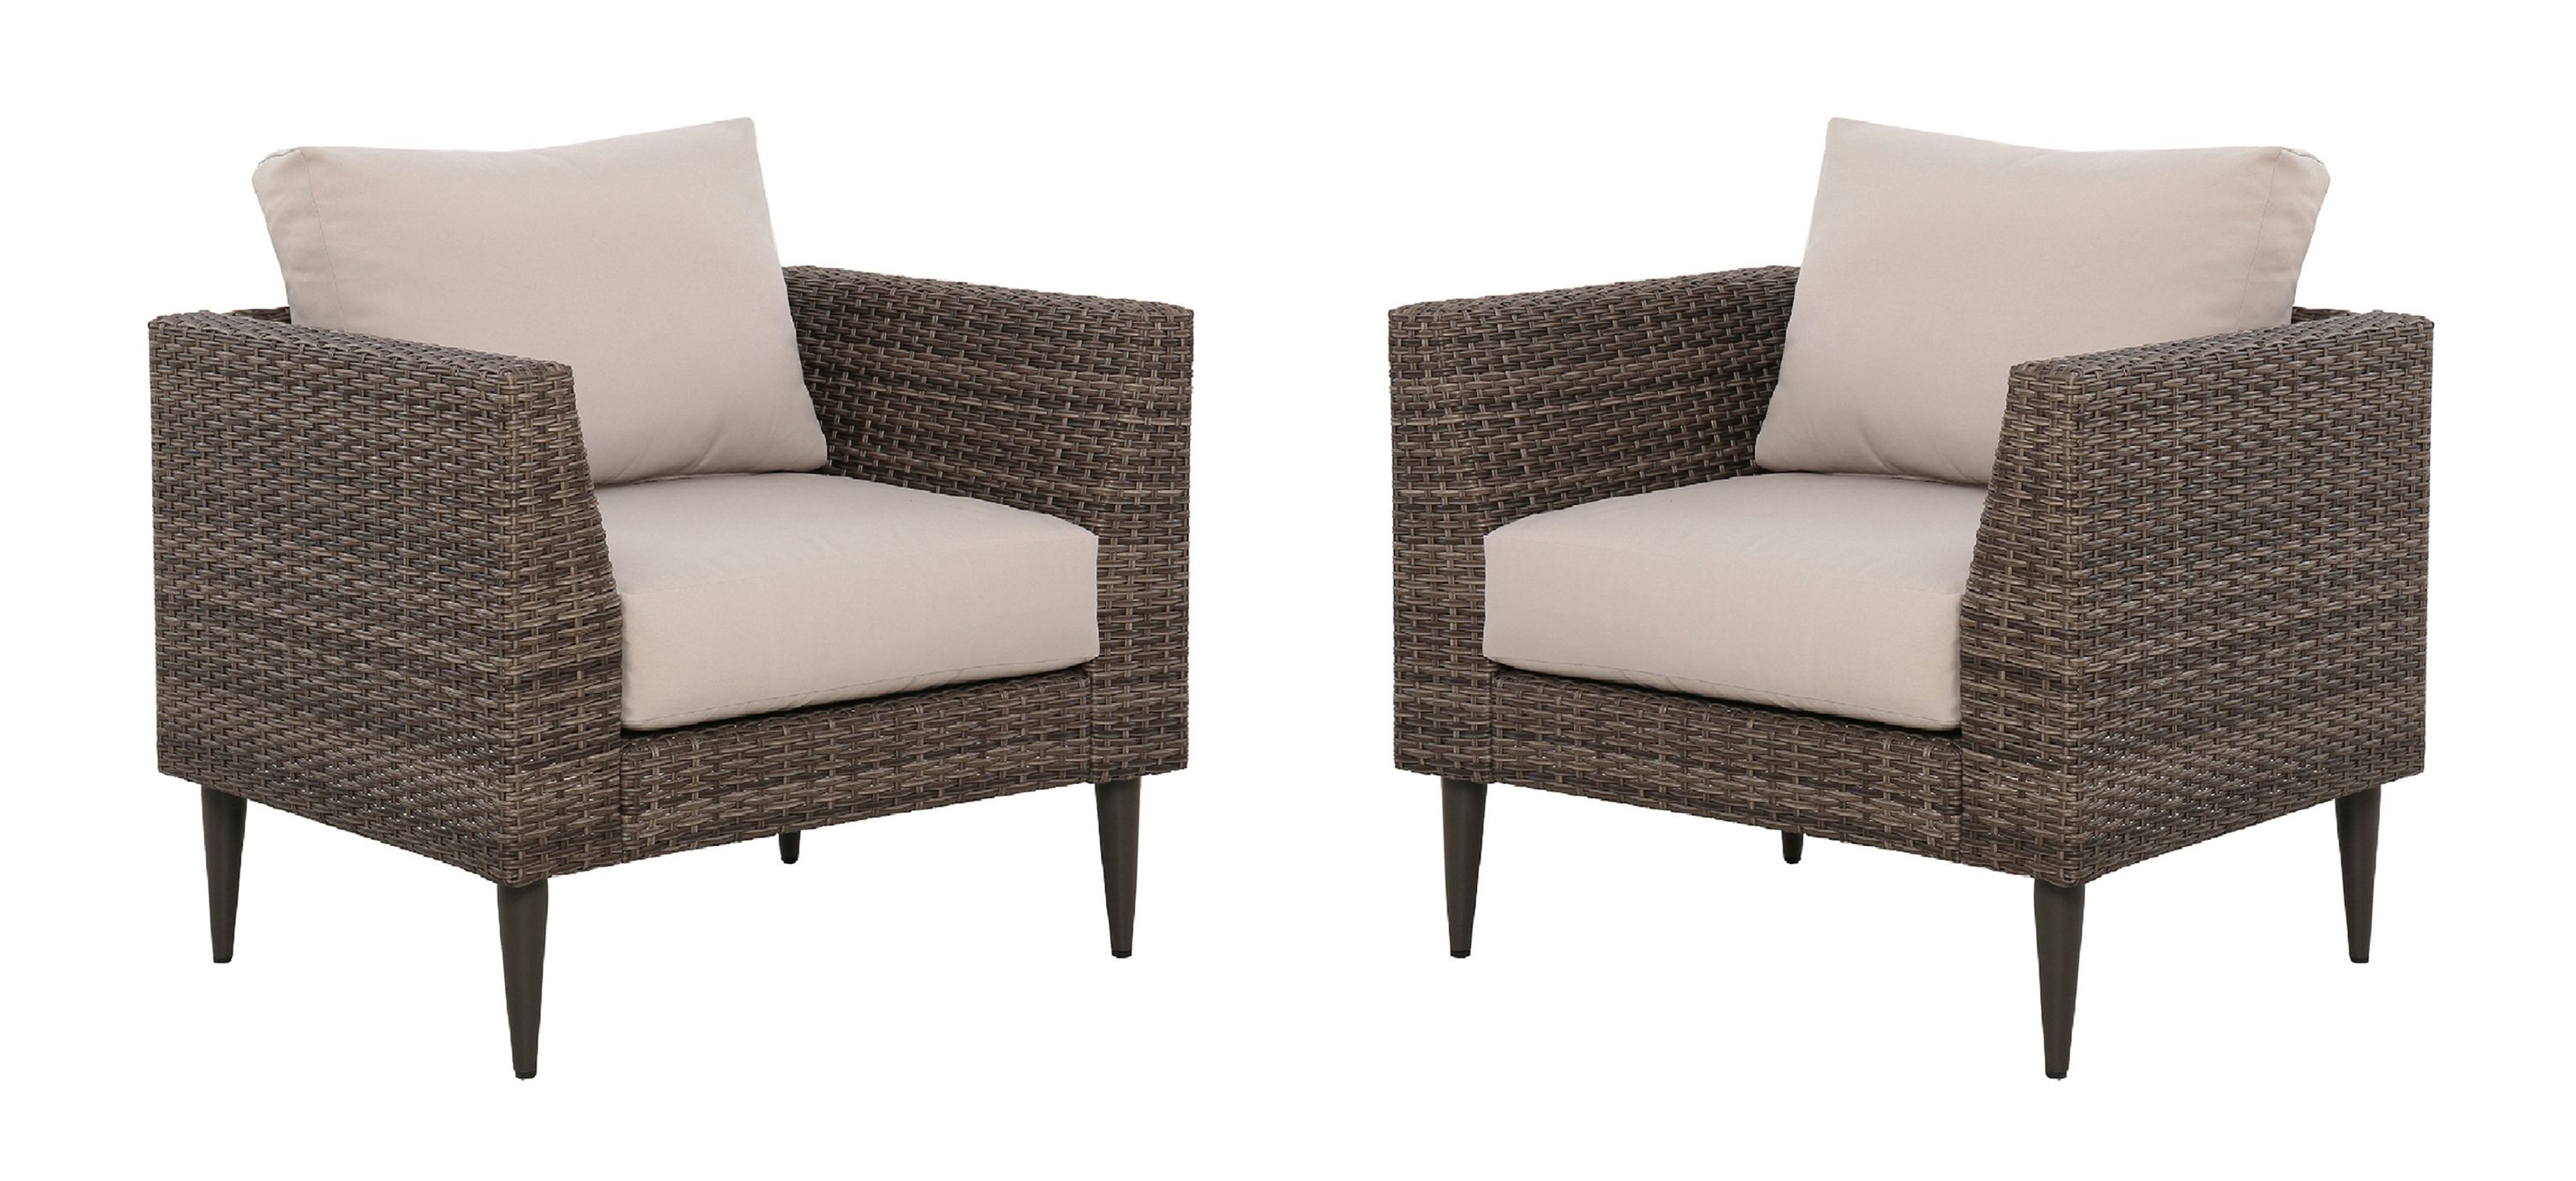 Benton 2-pc. Outdoor Weave Chair Set